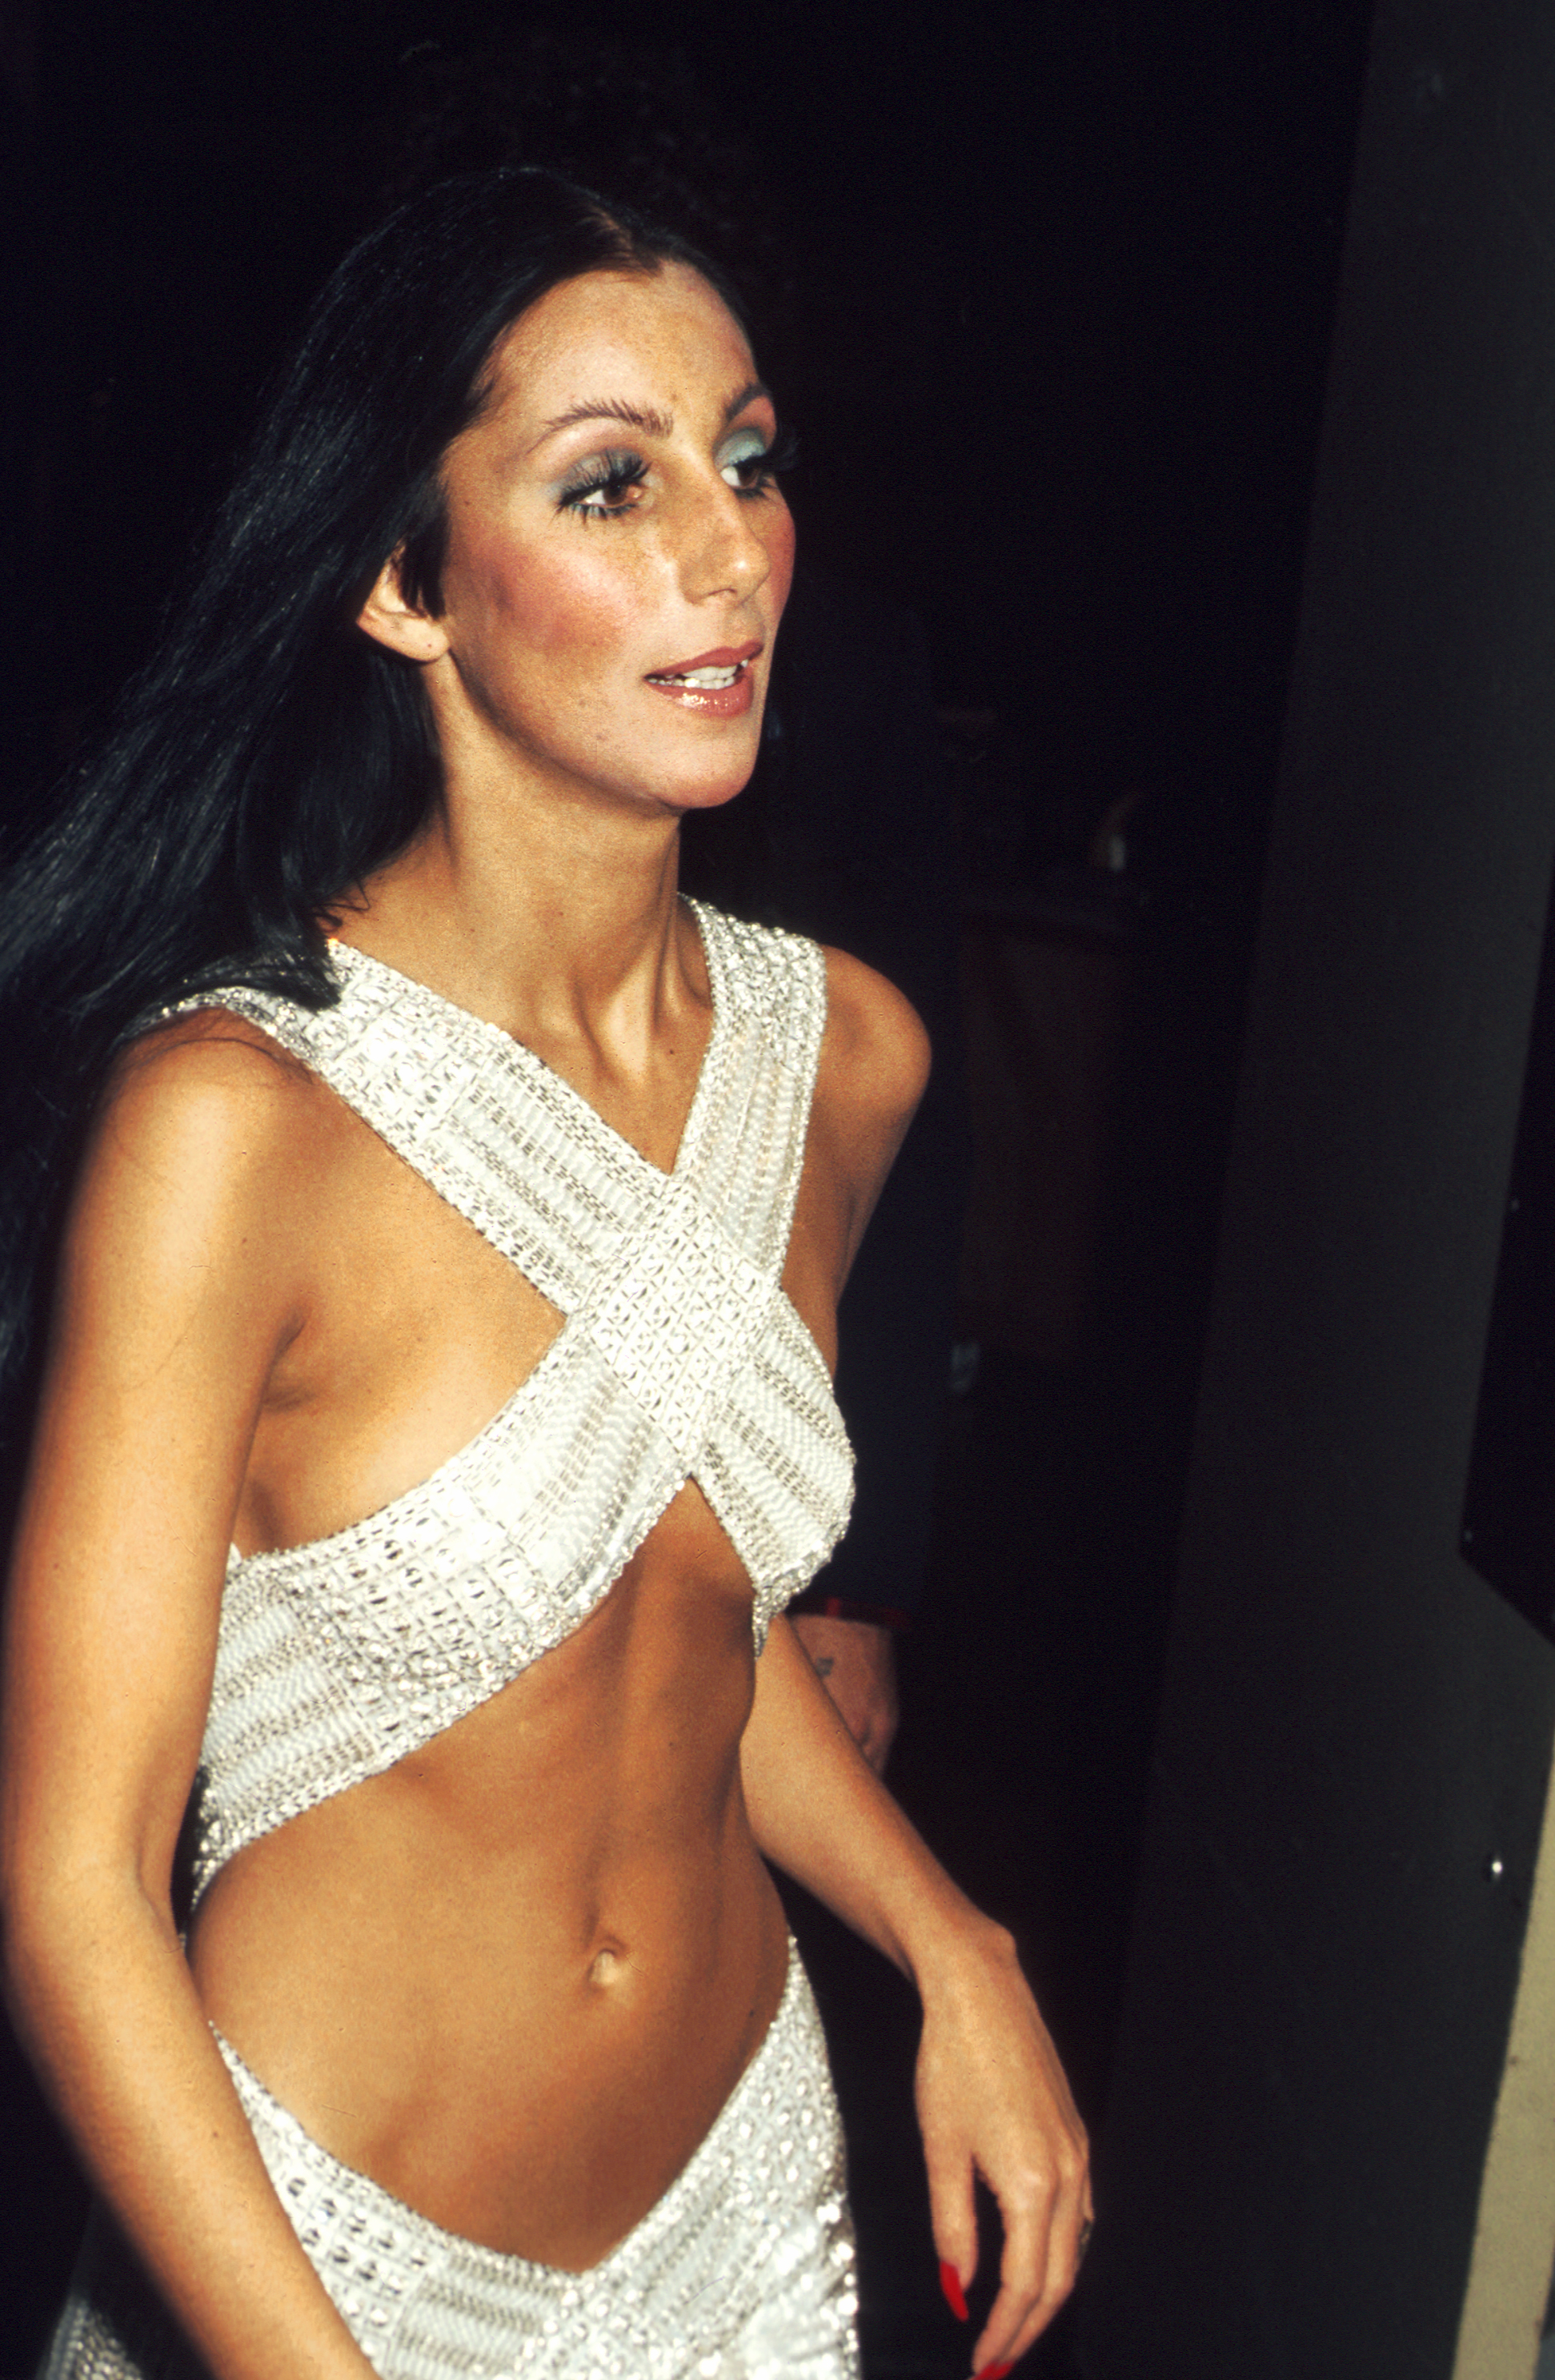 La artista Cher asiste a los Rock Music Awards en el Auditorio Cívico de Santa Mónica el 9 de agosto de 1975 en Los Ángeles, California. | Foto: Getty Images